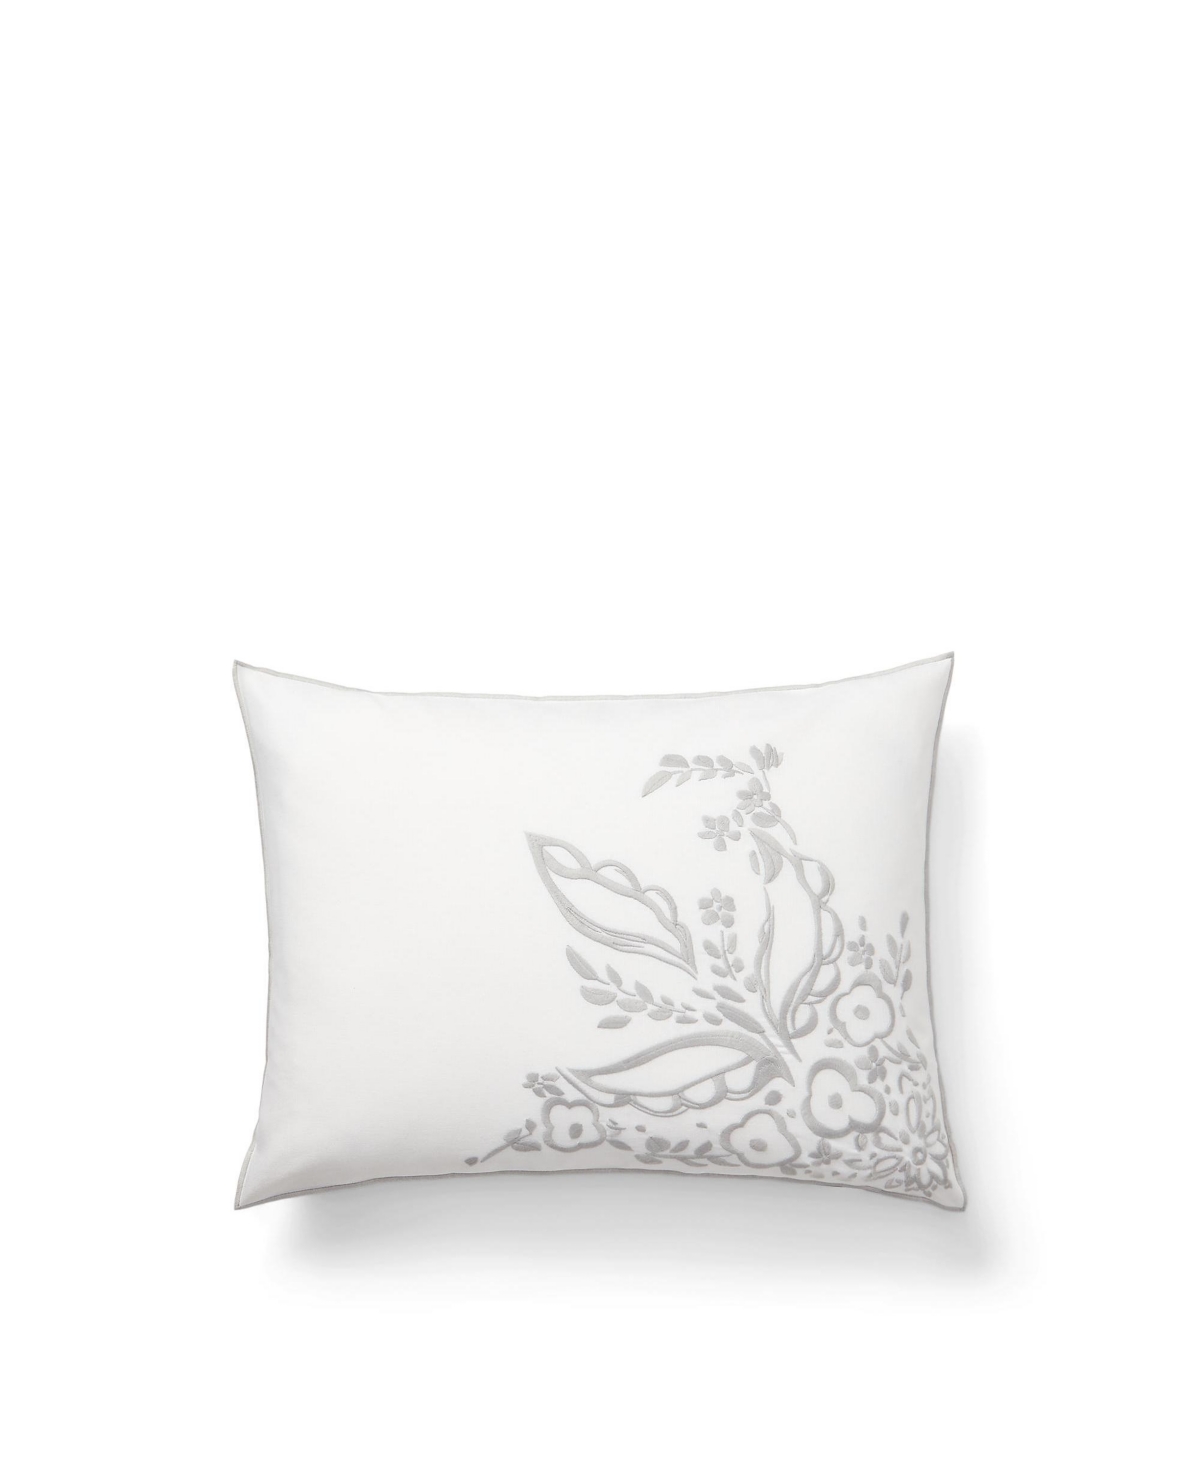 Lauren Ralph Lauren Naomi Embroidery Decorative Pillow, 15" X 20" In Multi